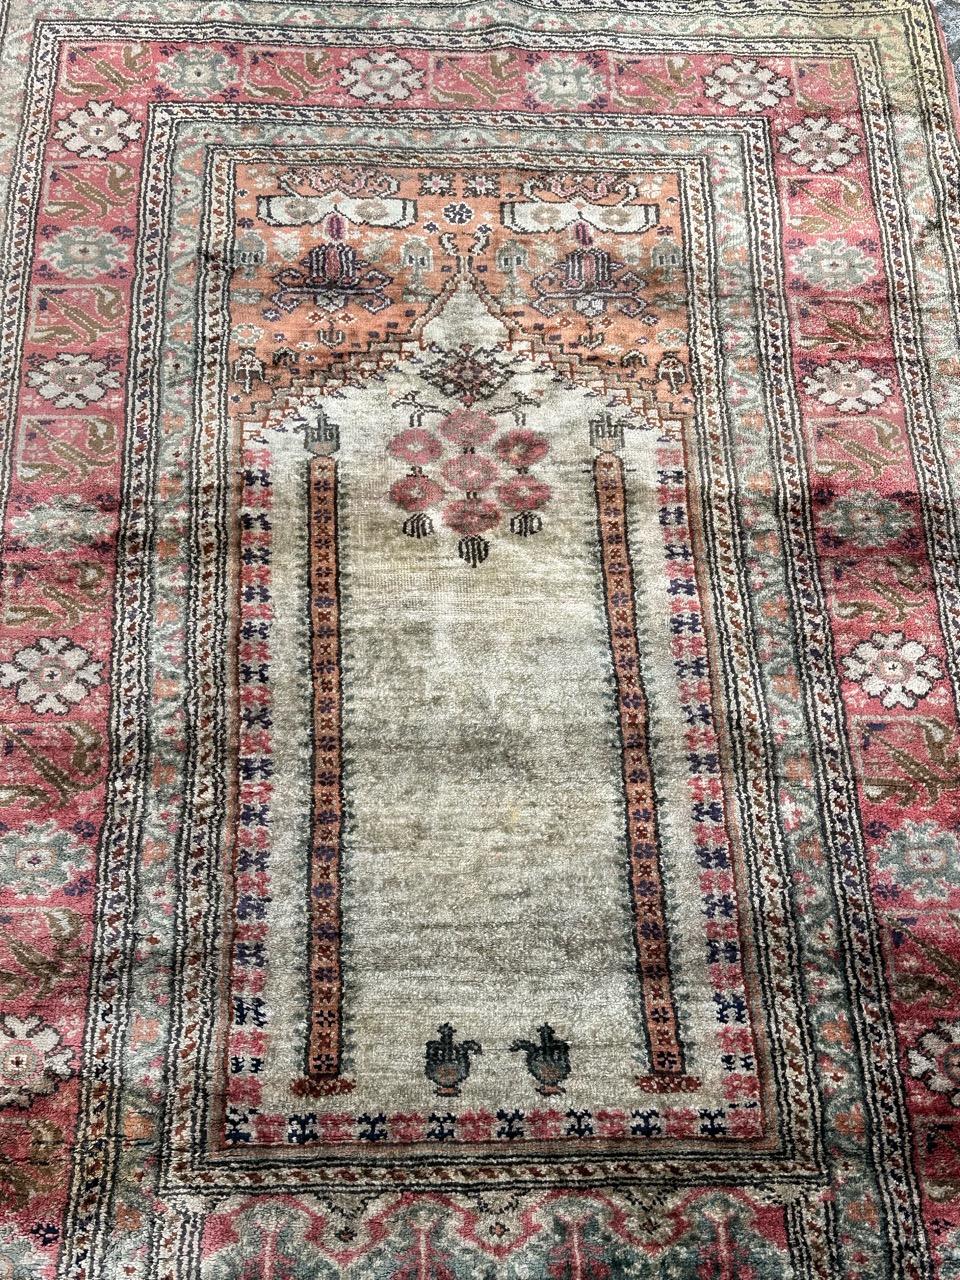 Hübscher türkischer Cesareh-Teppich aus der Mitte des Jahrhunderts mit schönem Mihrab-Muster, das einen Eingang mit Säulen und die ihn umgebenden stilisierten Dekorationen und Blumen zeigt. In schönen hellen Farben mit einem hellen Grün, Orange,